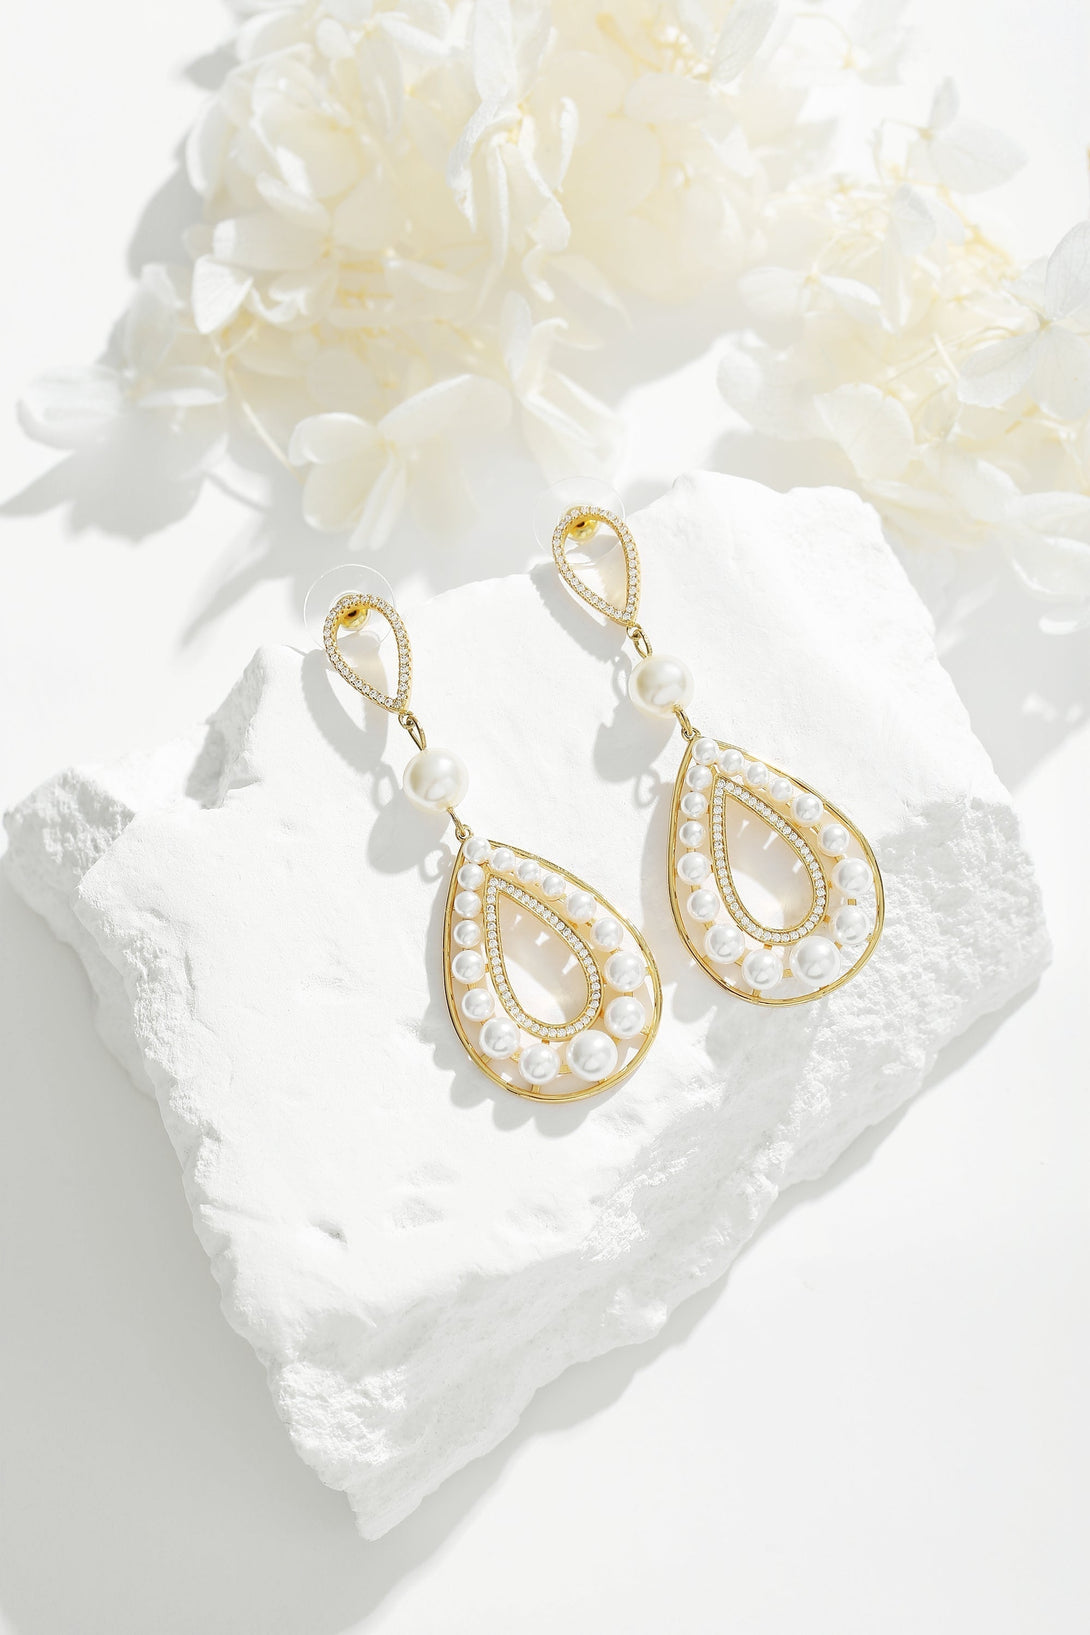 Gold Pearl Hollow Teardrop Dangle Earrings - Classicharms